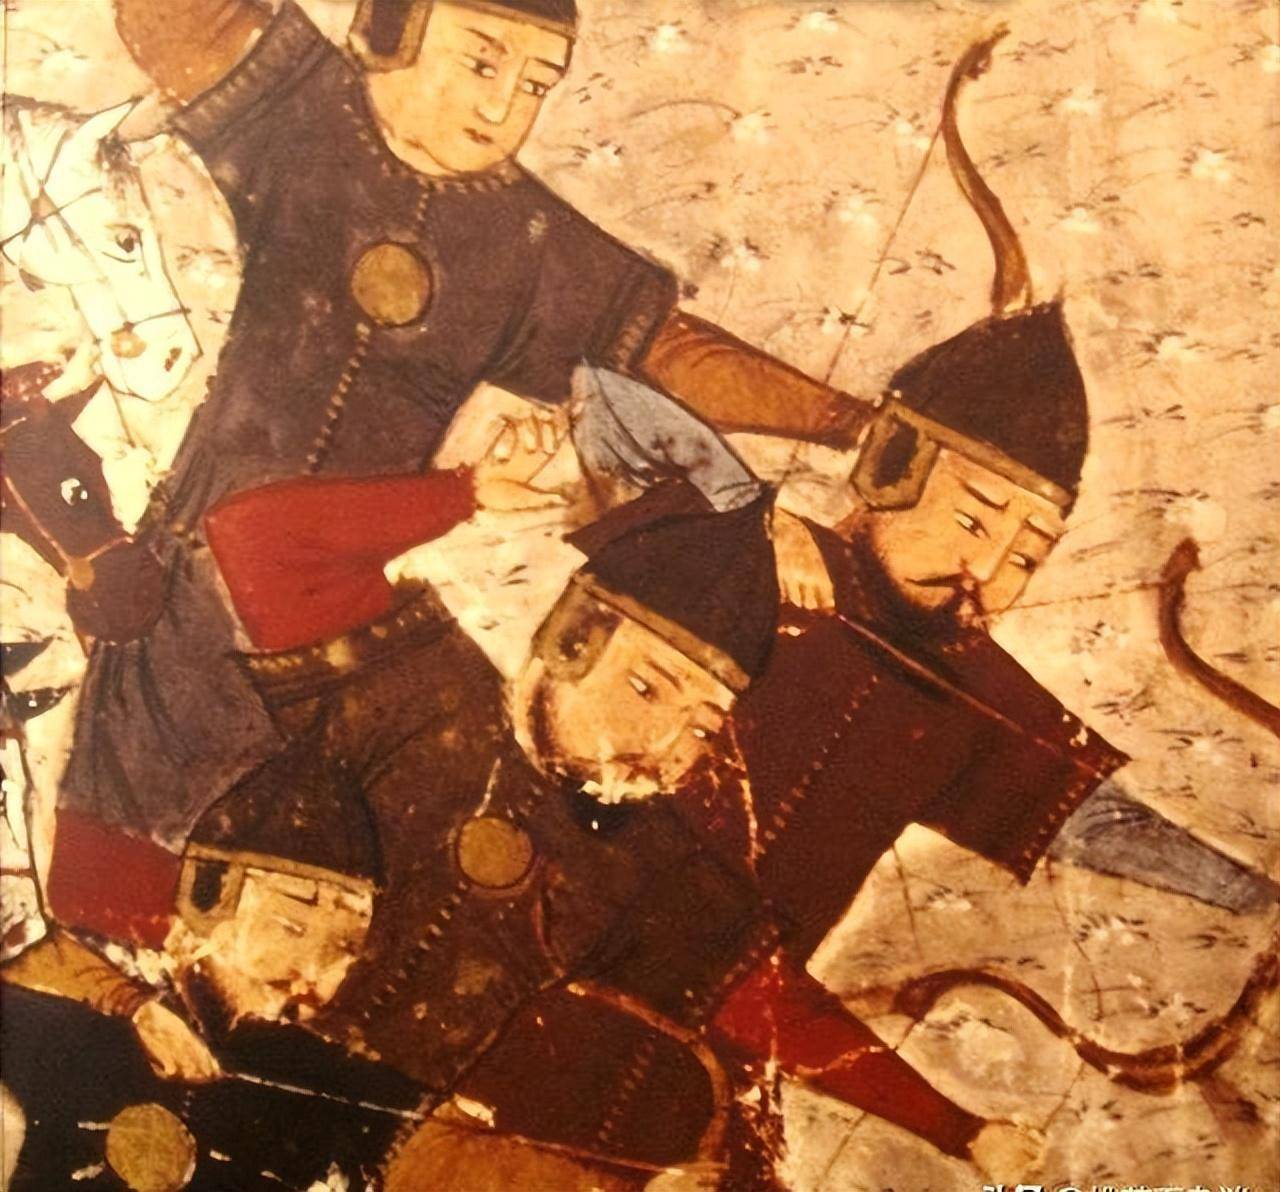 蒙古瓦剌部的兴衰起伏,影响远达西亚北非,跟鞑靼什么关系?